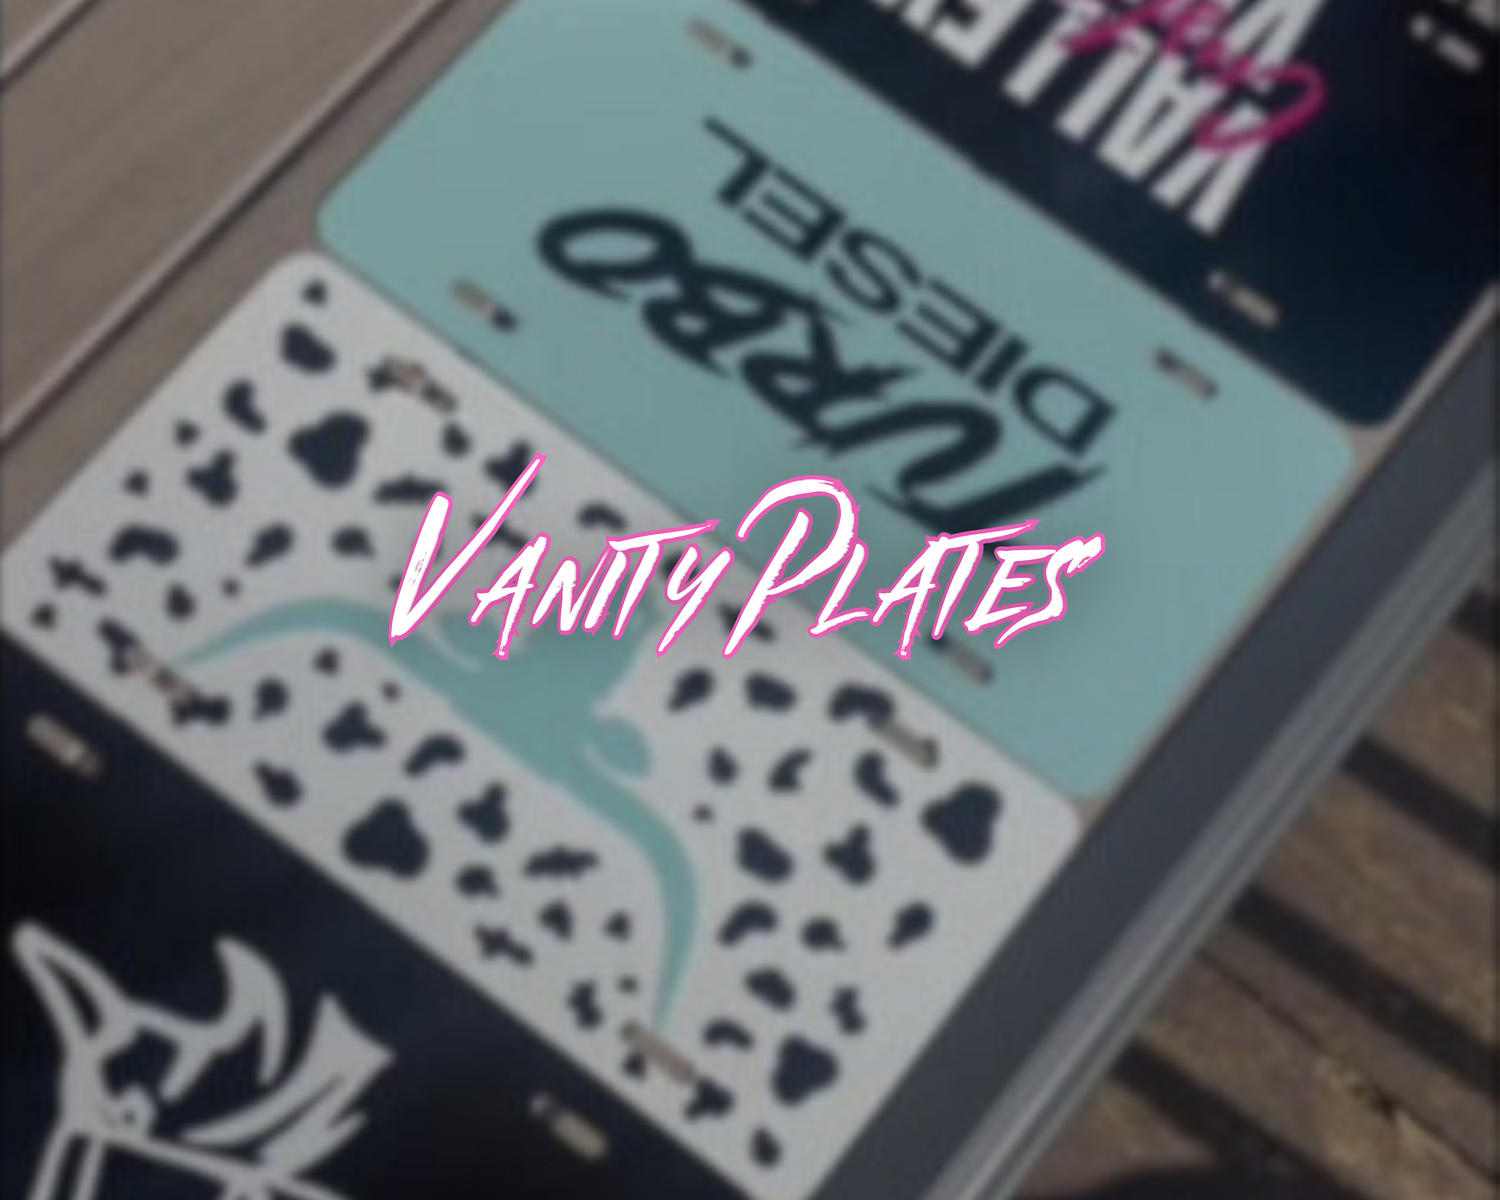 Vanity Plates